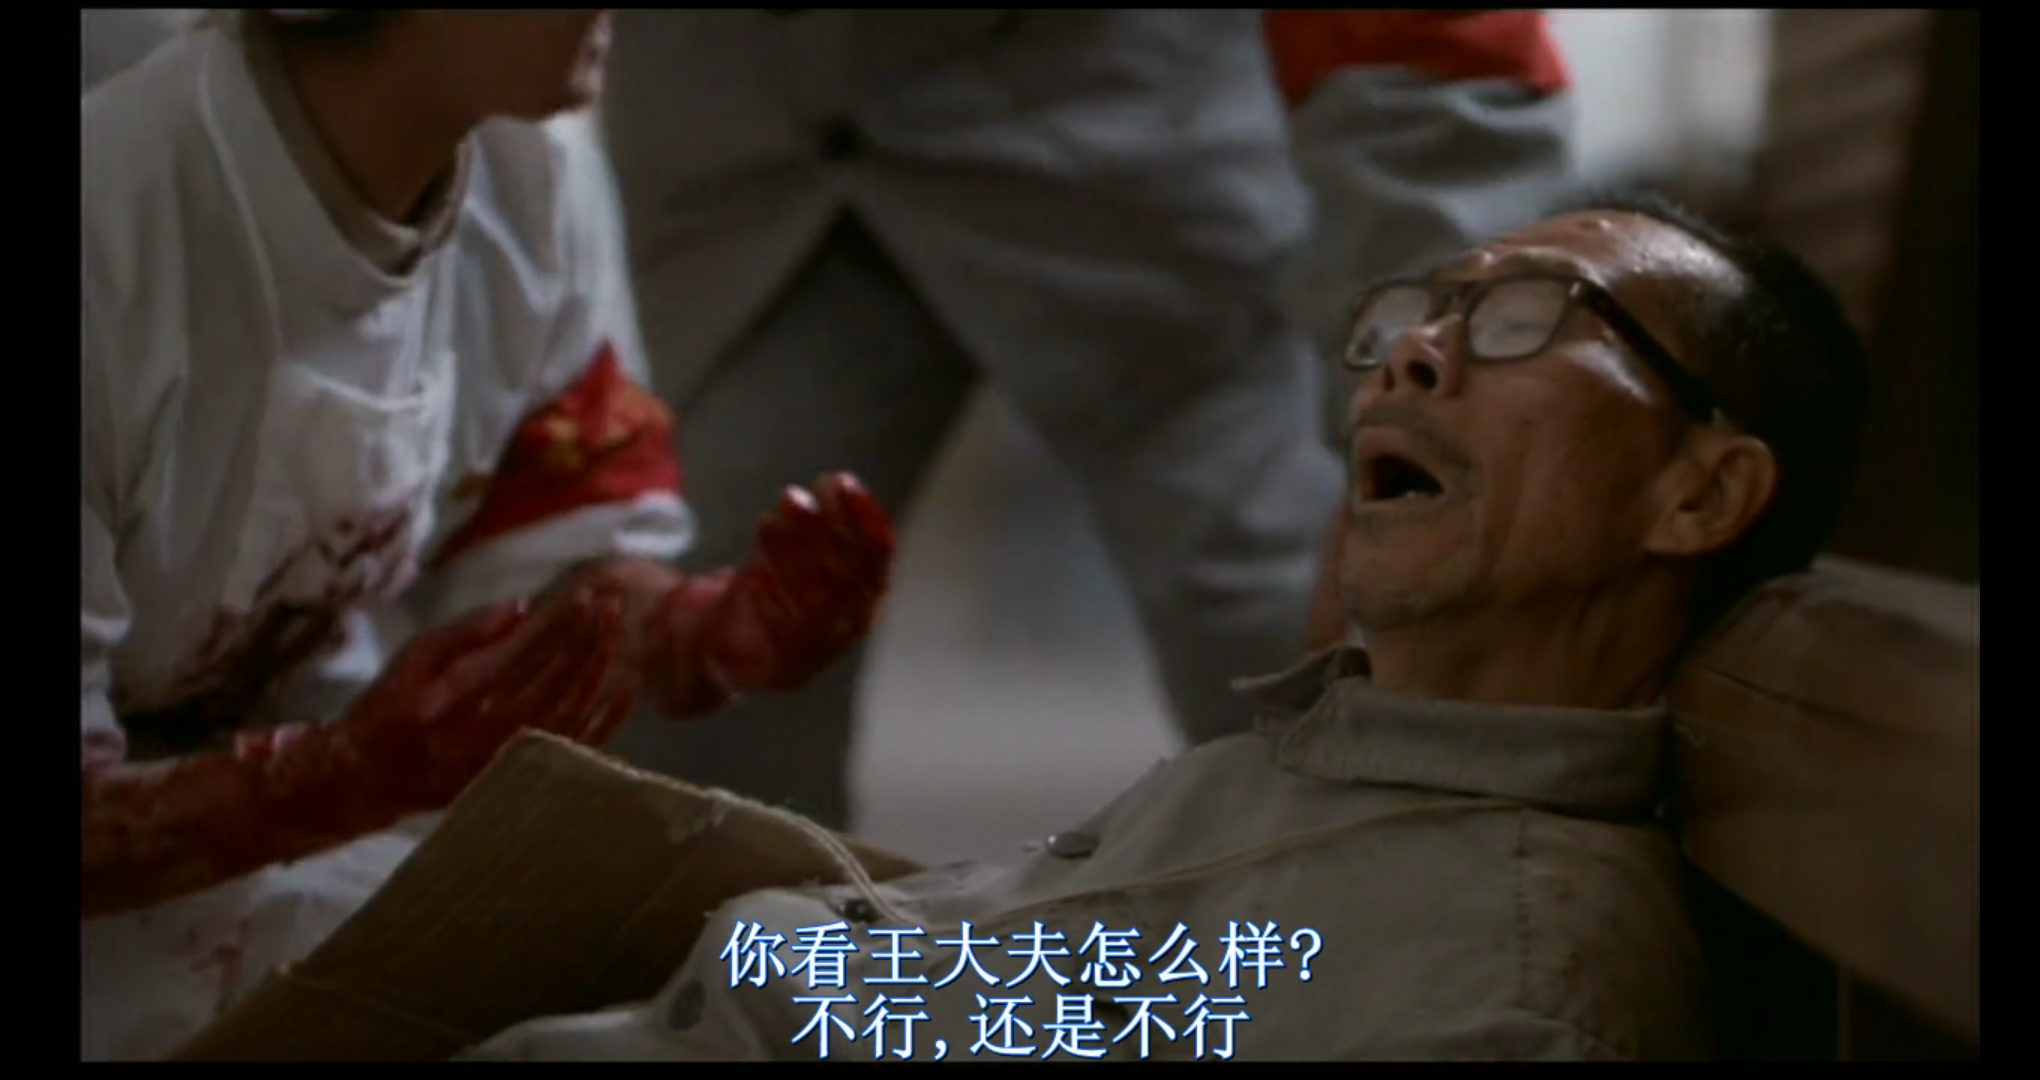 昨天看了1994年巩俐和葛优主演的《活着》,这部电影相传为禁片.